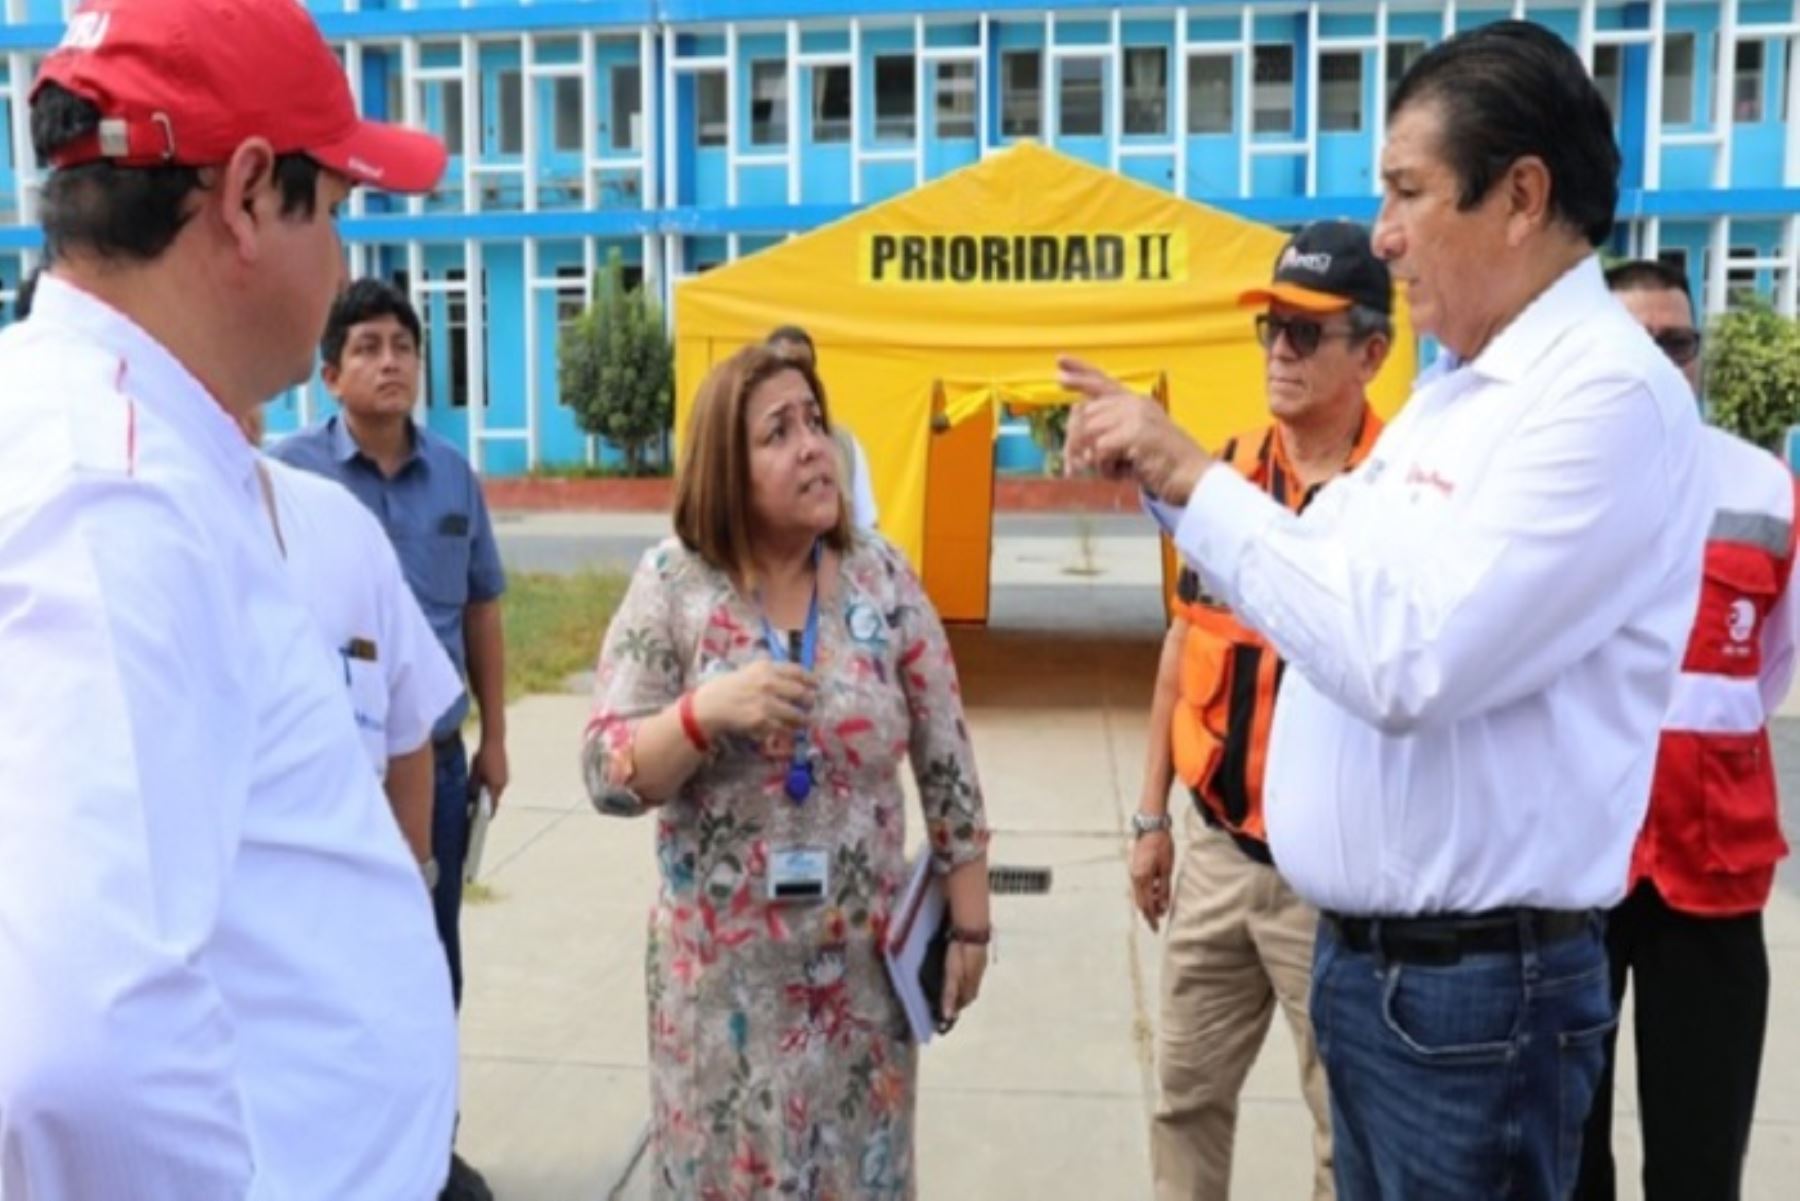 El ministro de Vivienda, Rodolfo Yáñez, consideró necesario que las autoridades transmitan un mensaje de tranquilidad a la población frente al coronavirus.